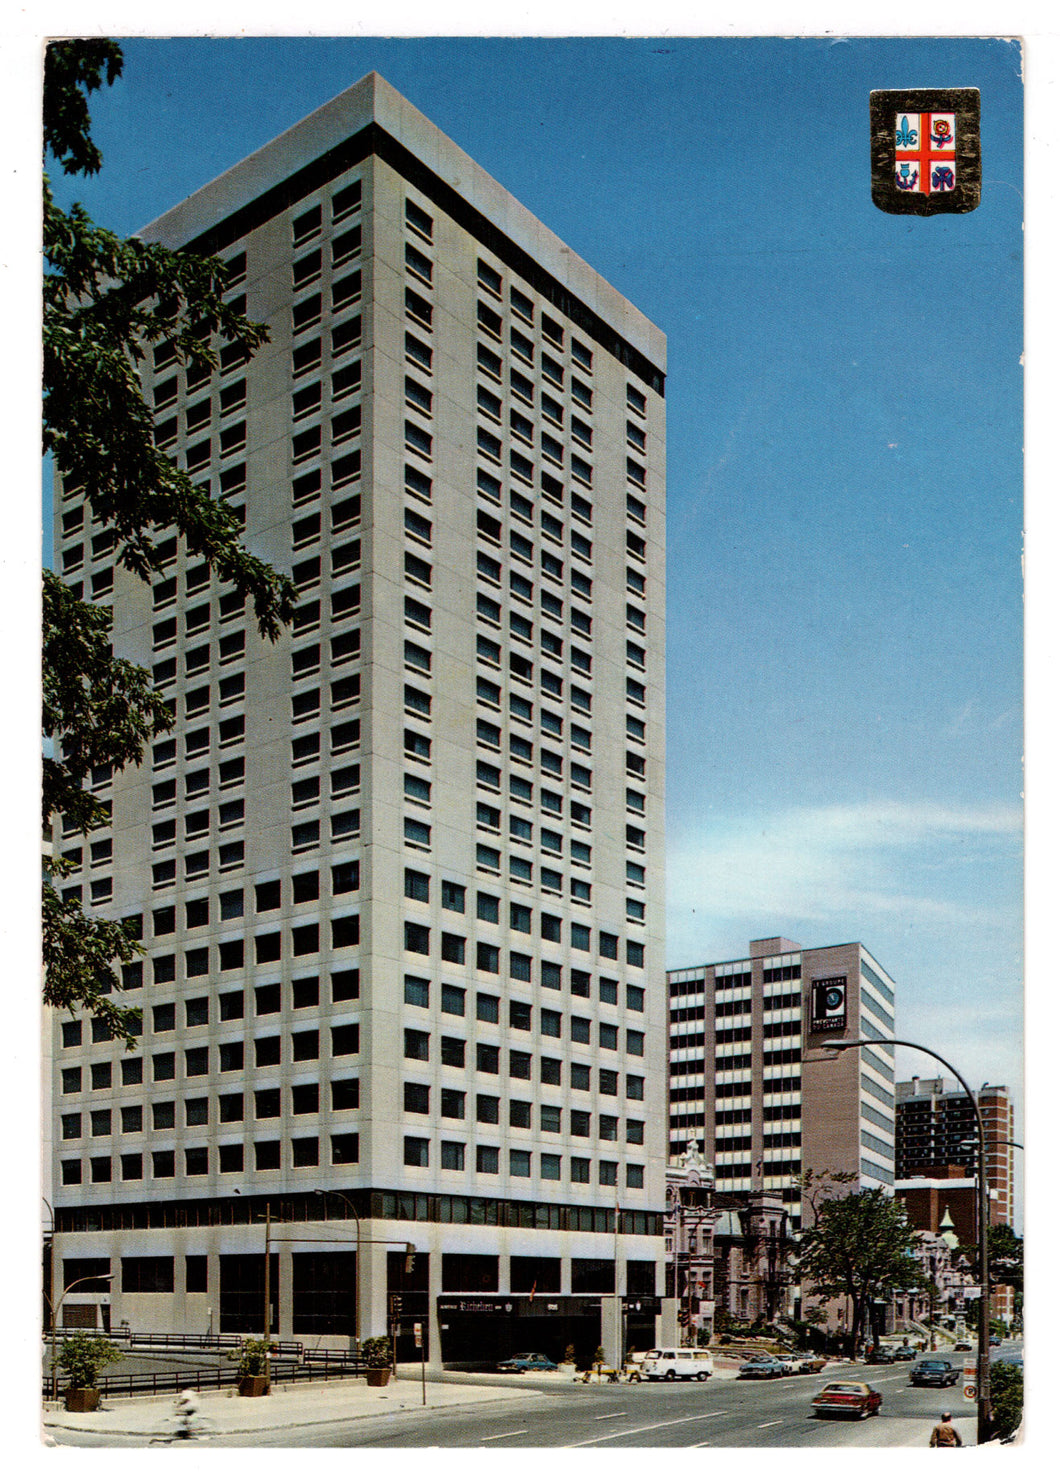 Gouverneur Hotel, Montreal, Quebec, Canada Vintage Original Postcard # 0330 - Post Marked November 1, 1985